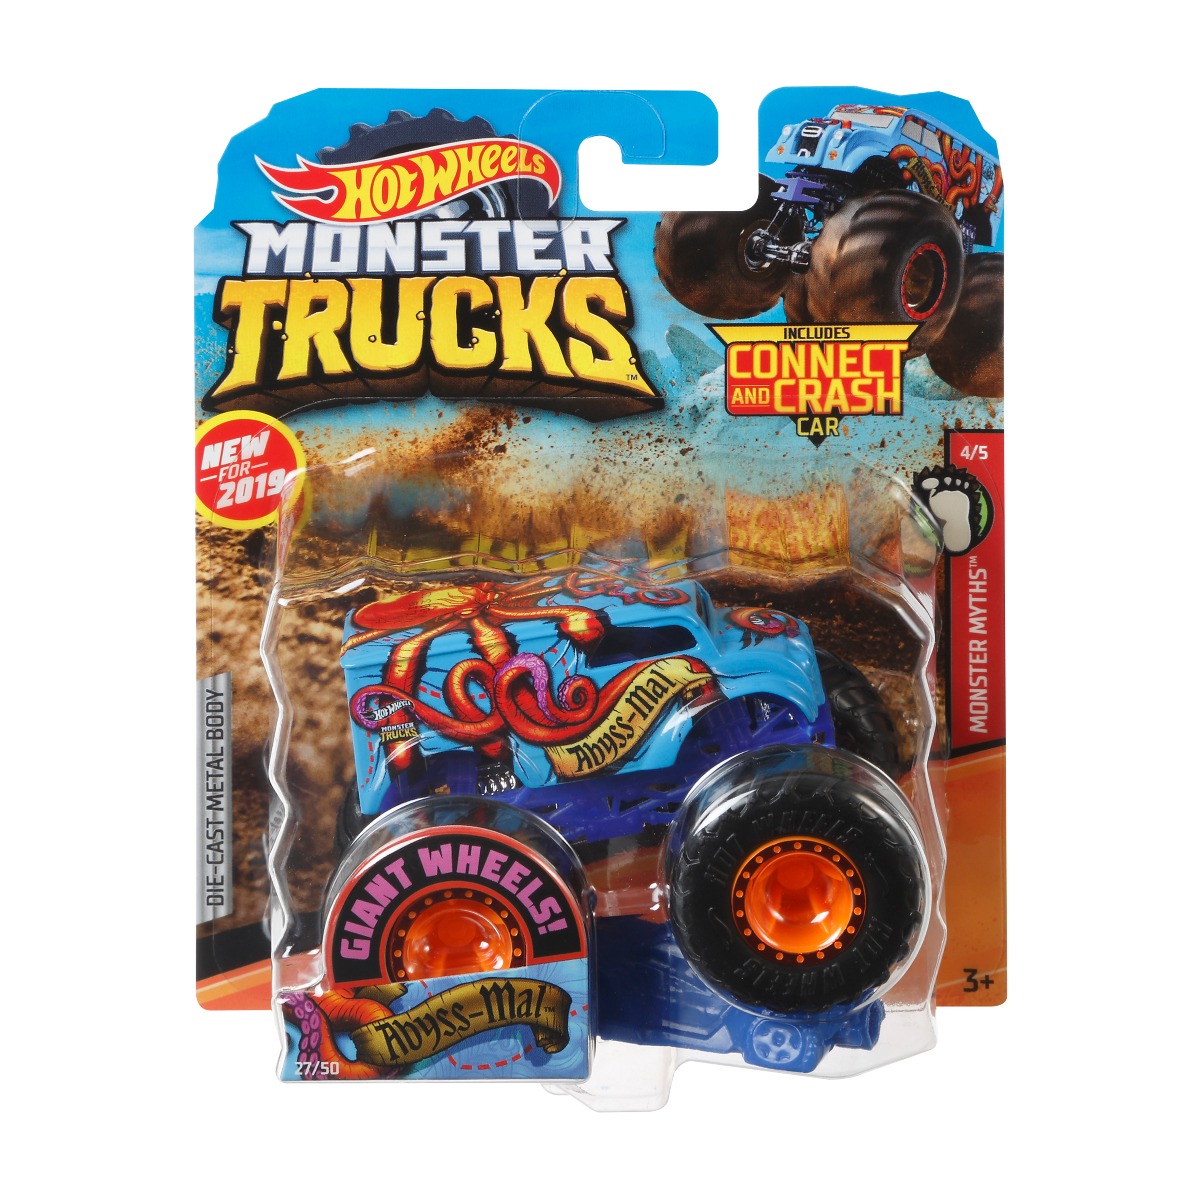 Masinuta Hot Wheels Monster Truck, Abyss-Mal, GBT51